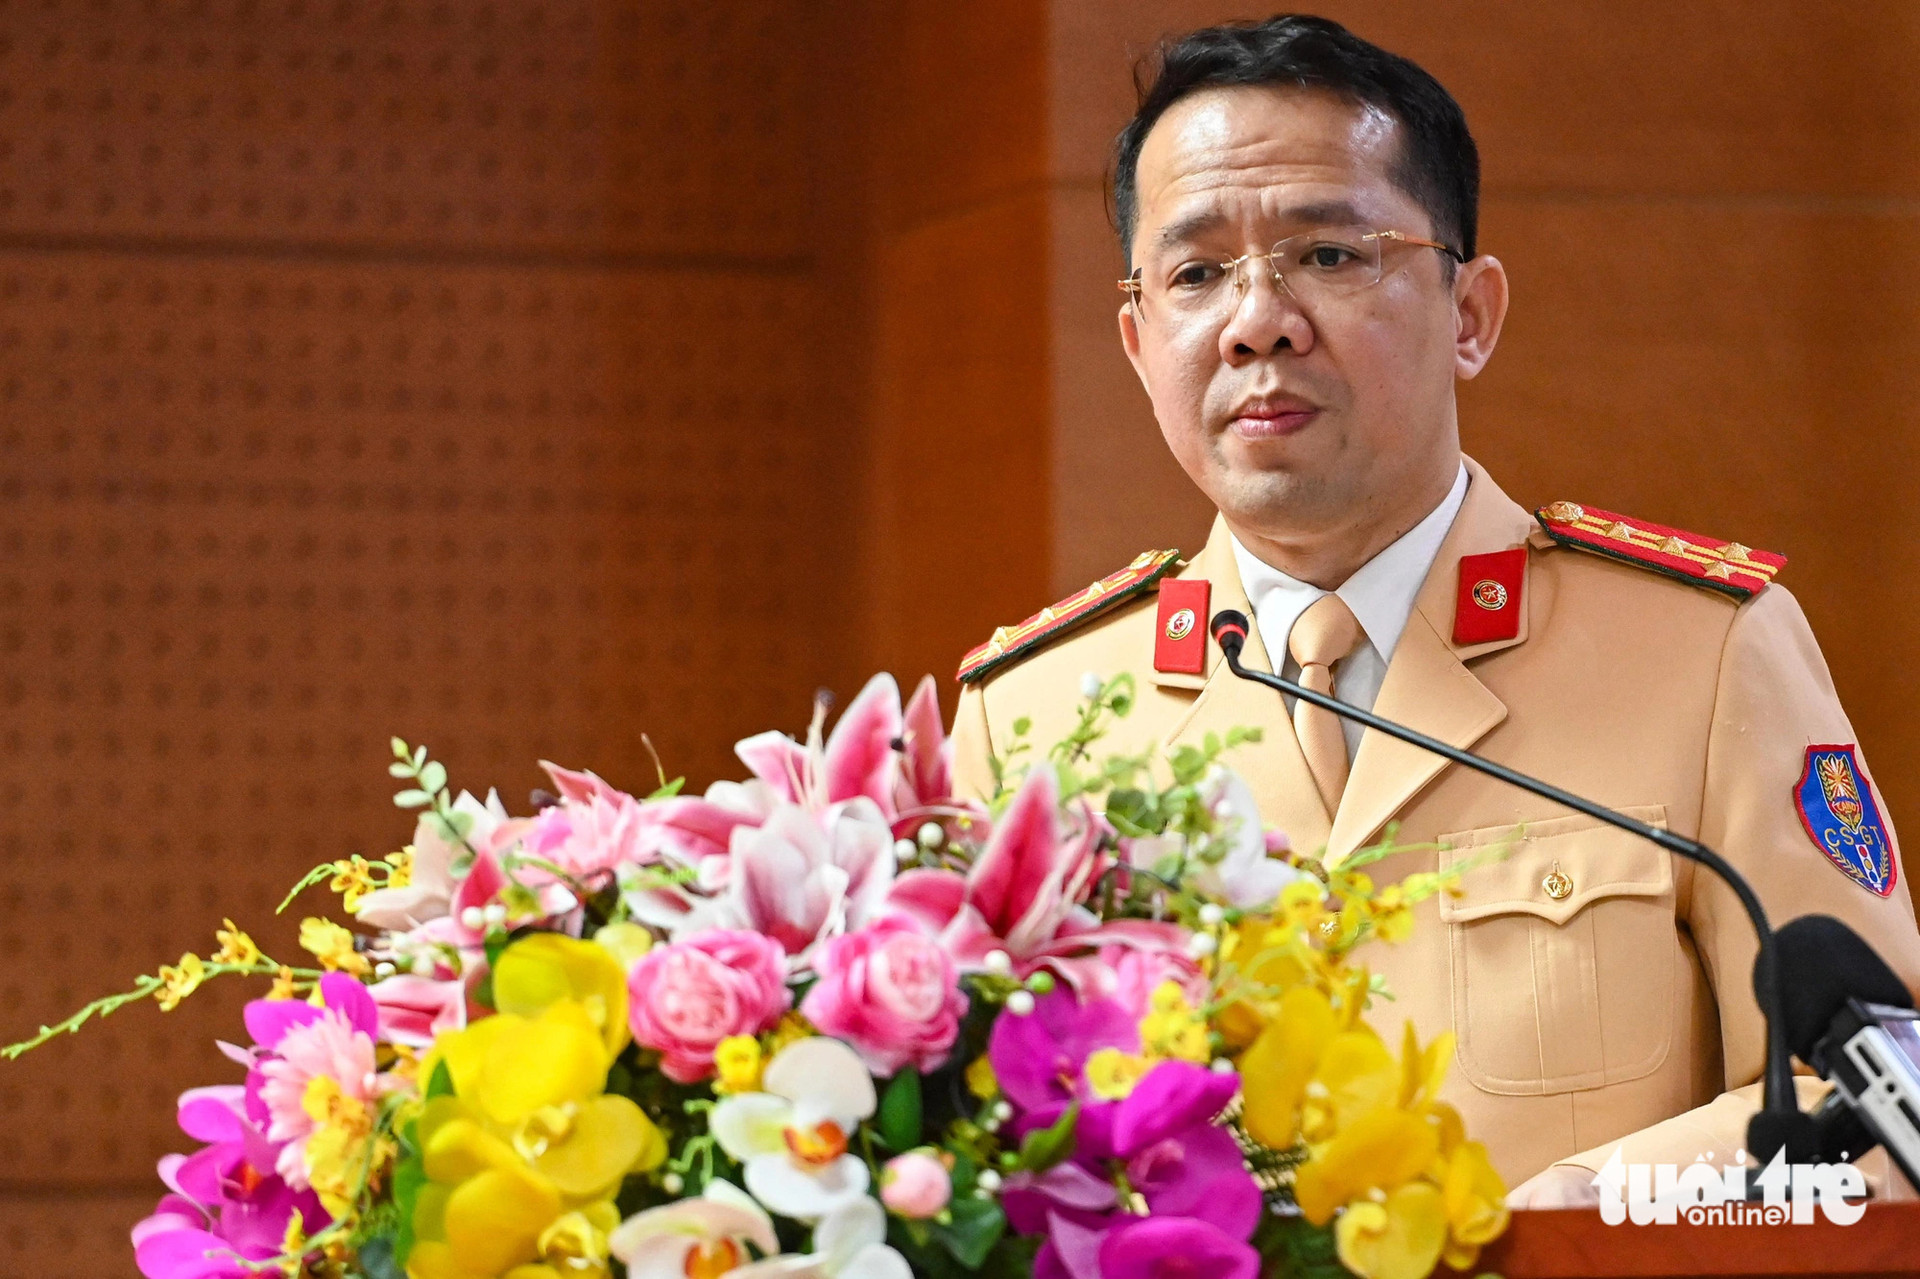 Đại tá Nguyễn Quang Nhật, trưởng Phòng hướng dẫn tuyên truyền, điều tra giải quyết tai nạn giao thông (Cục Cảnh sát giao thông) - Ảnh: HỒNG QUANG